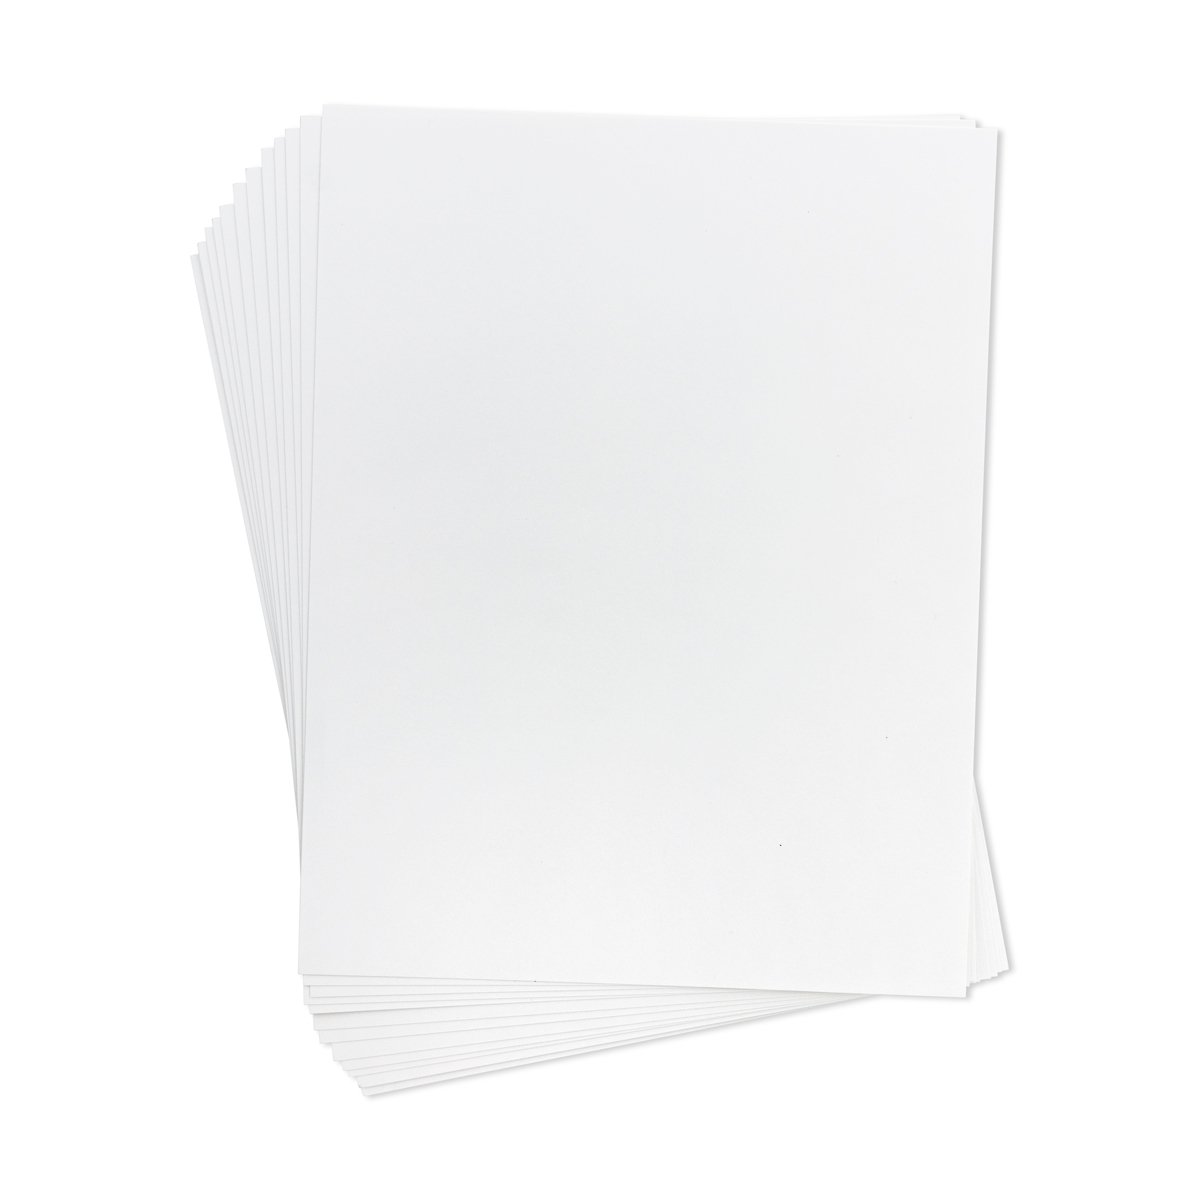 Art Board - Semi Gloss Card Stock - White - 8.5" x 11"